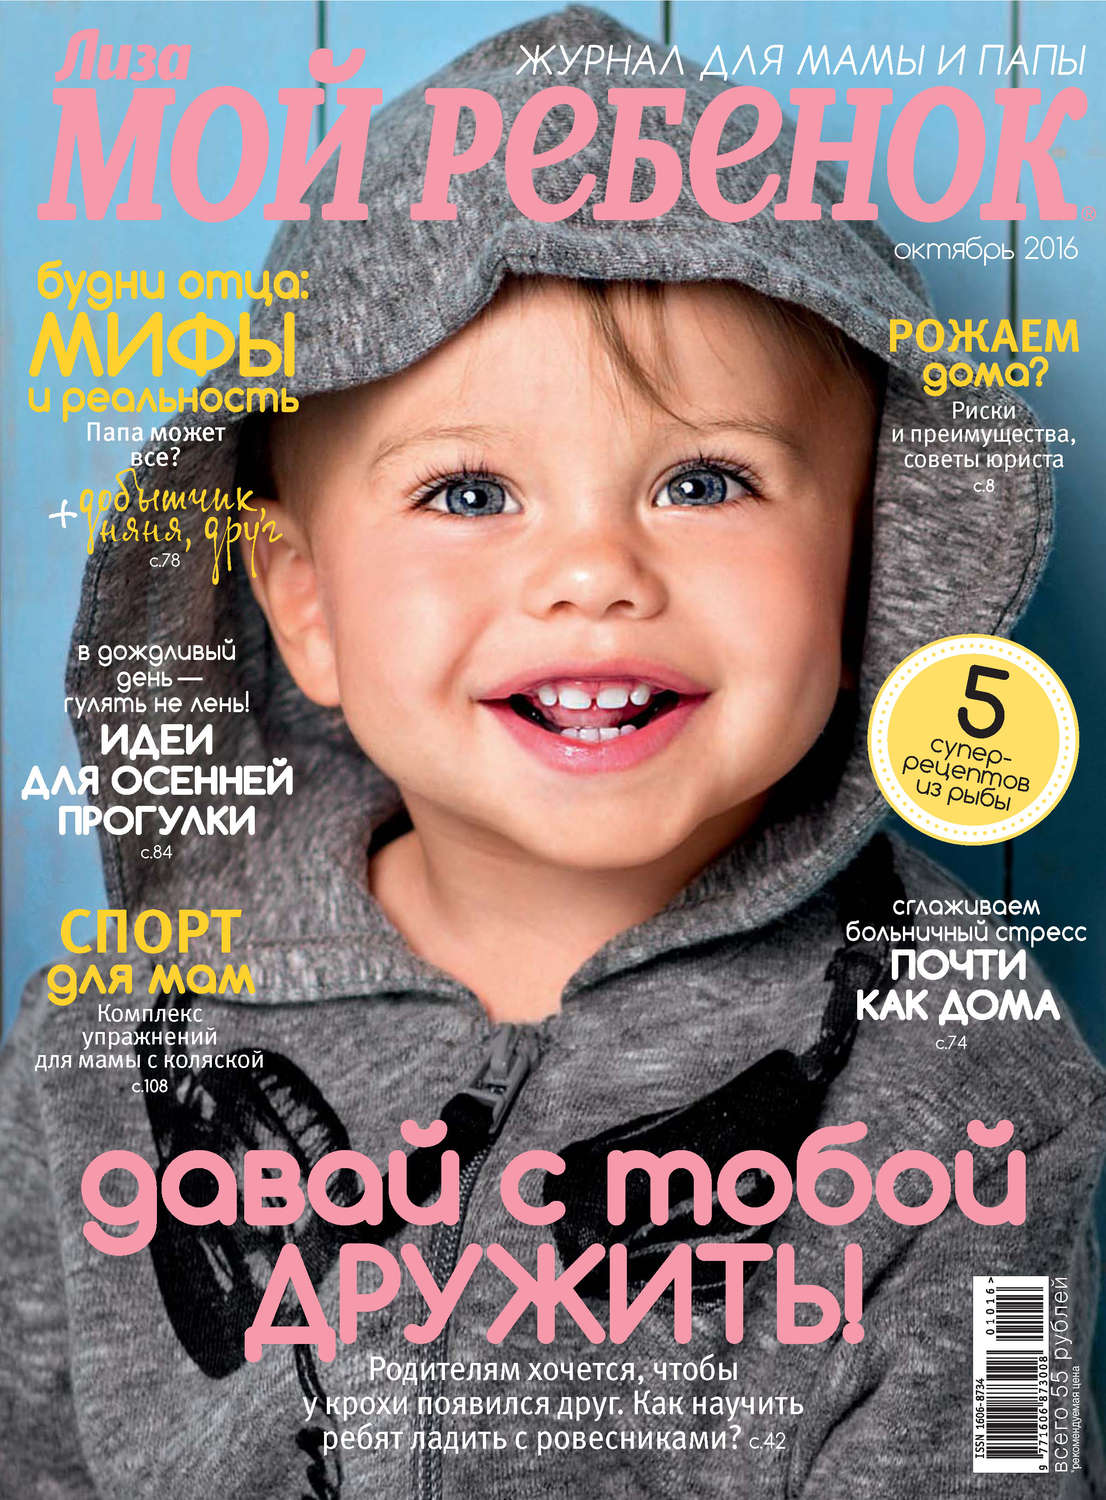 Обложка журнала для детей